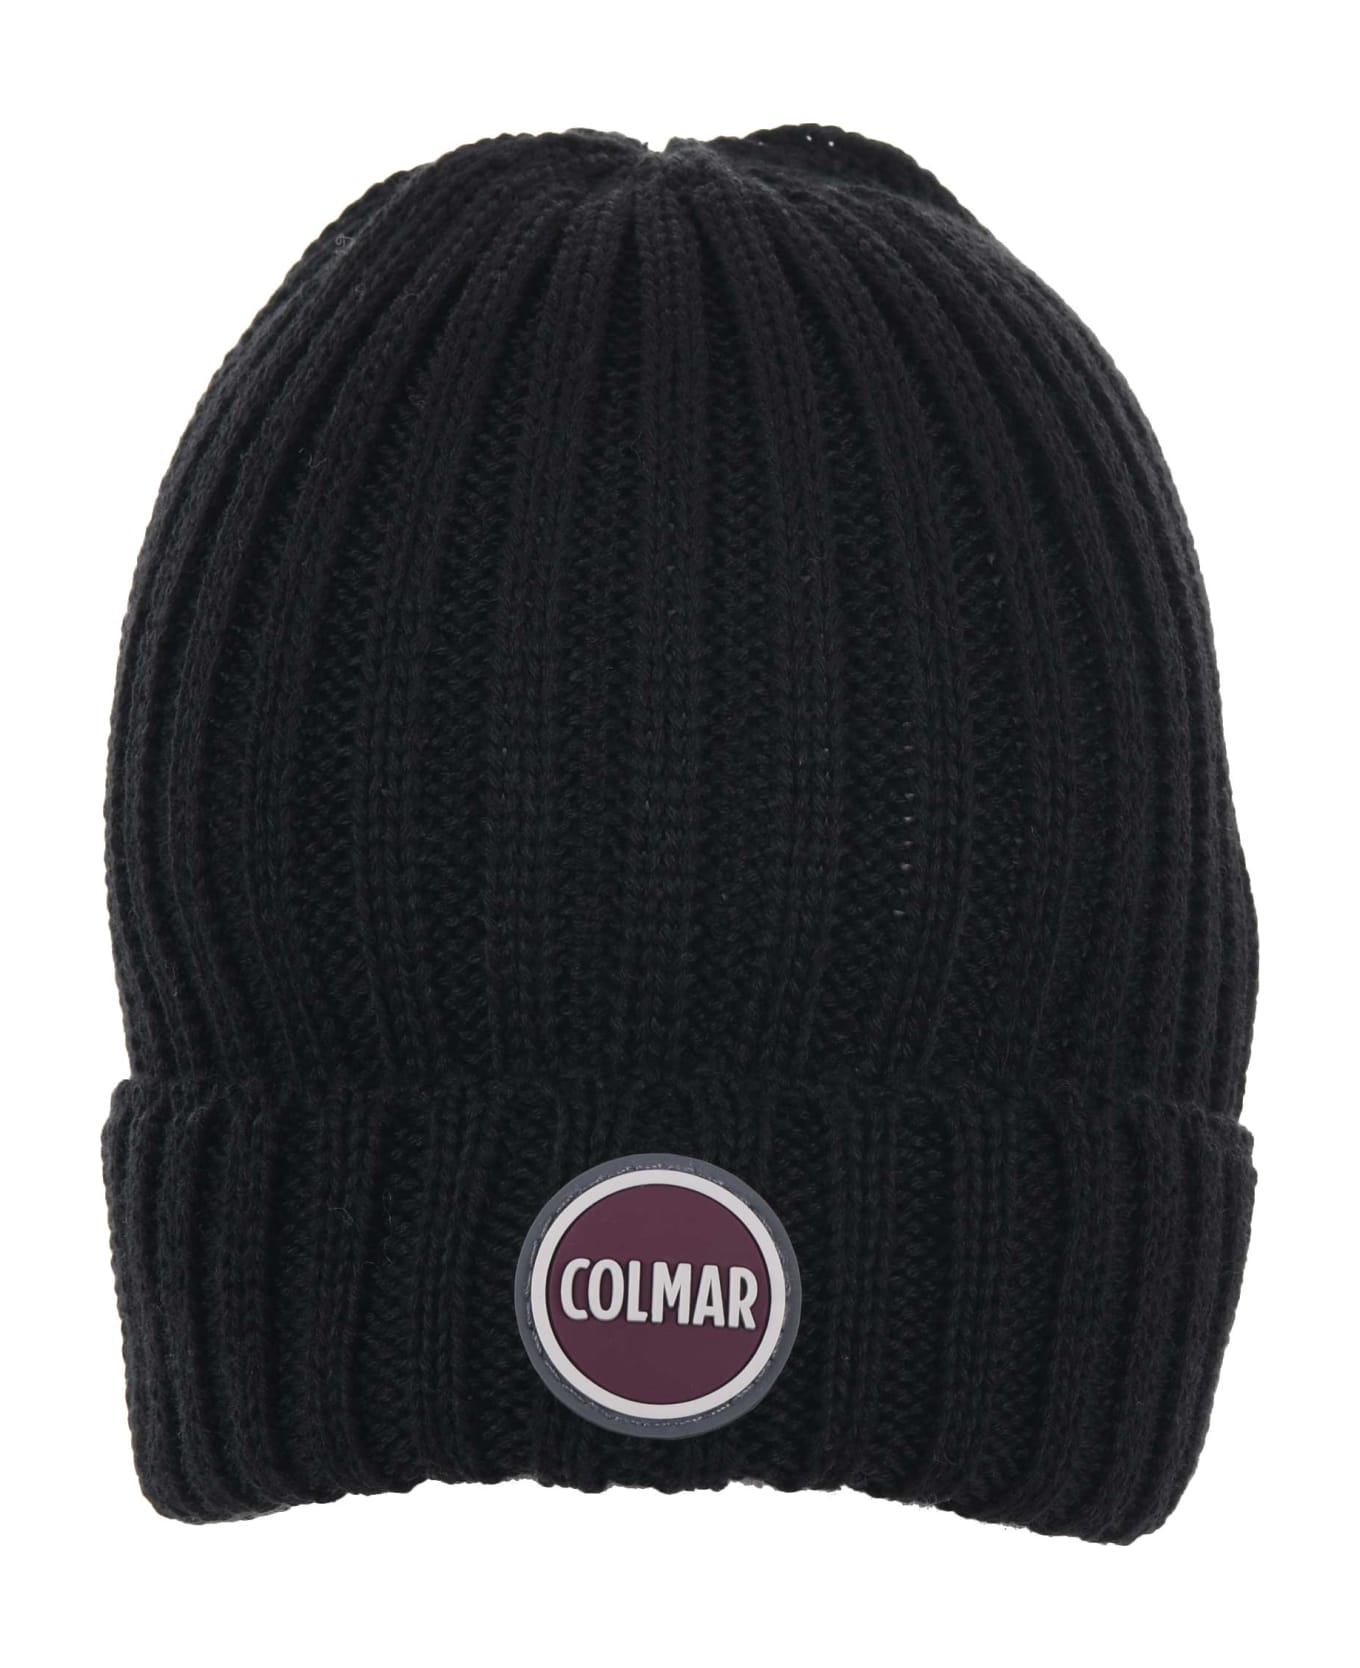 Colmar Originals Hat - Nero